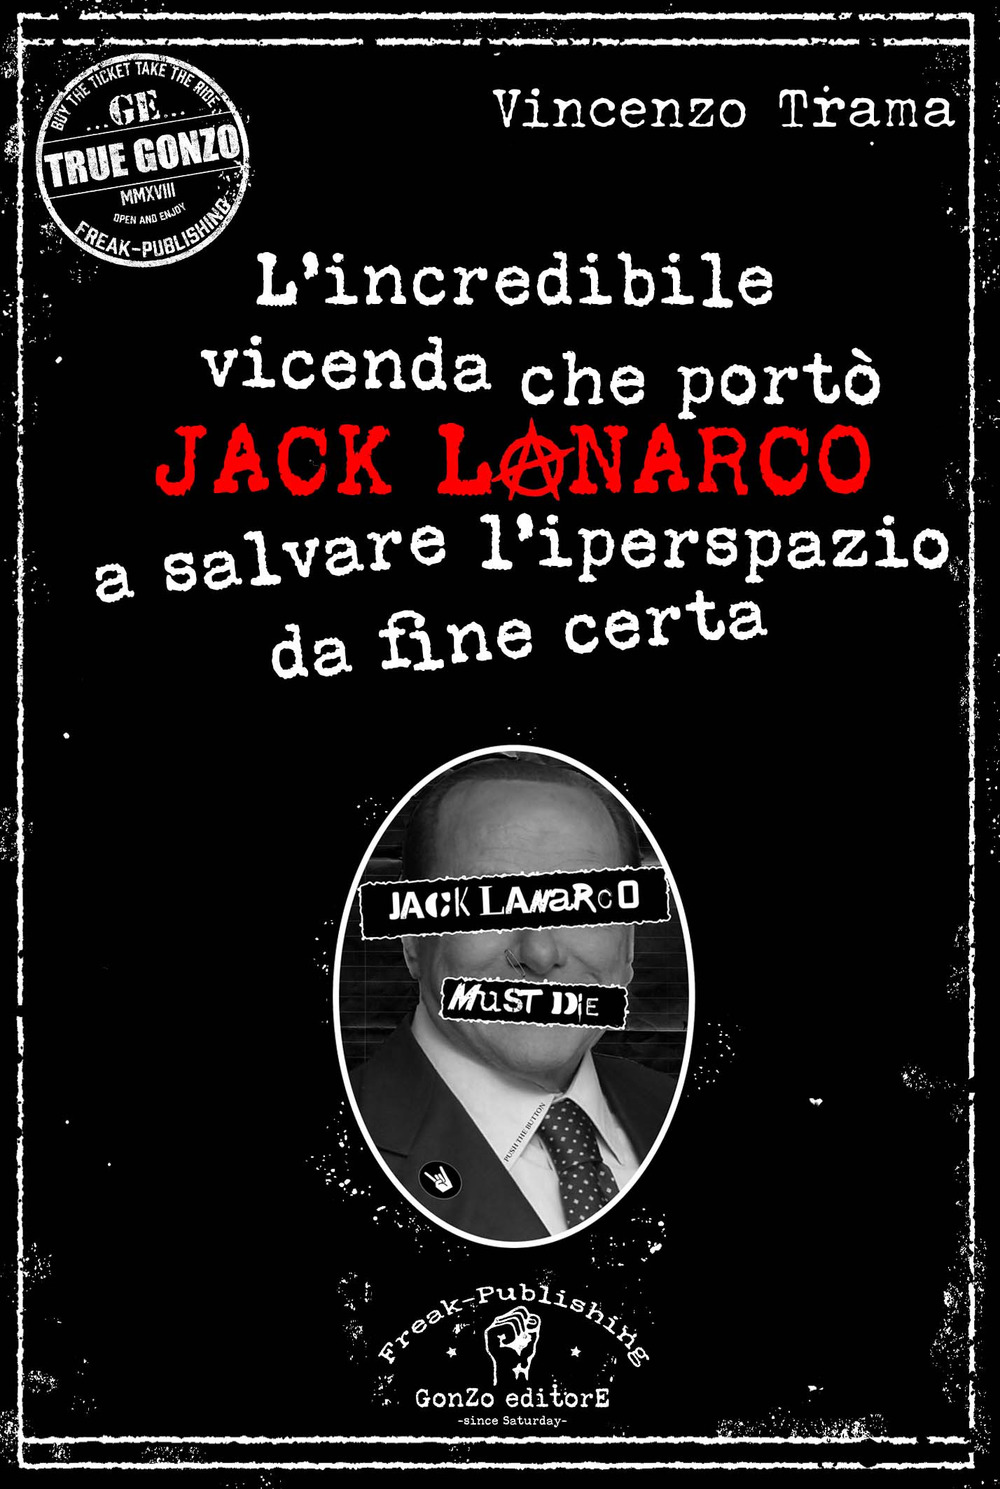 L'incredibile vicenda che portò Jack Lanarco a salvare l'iperspazio da fine certa